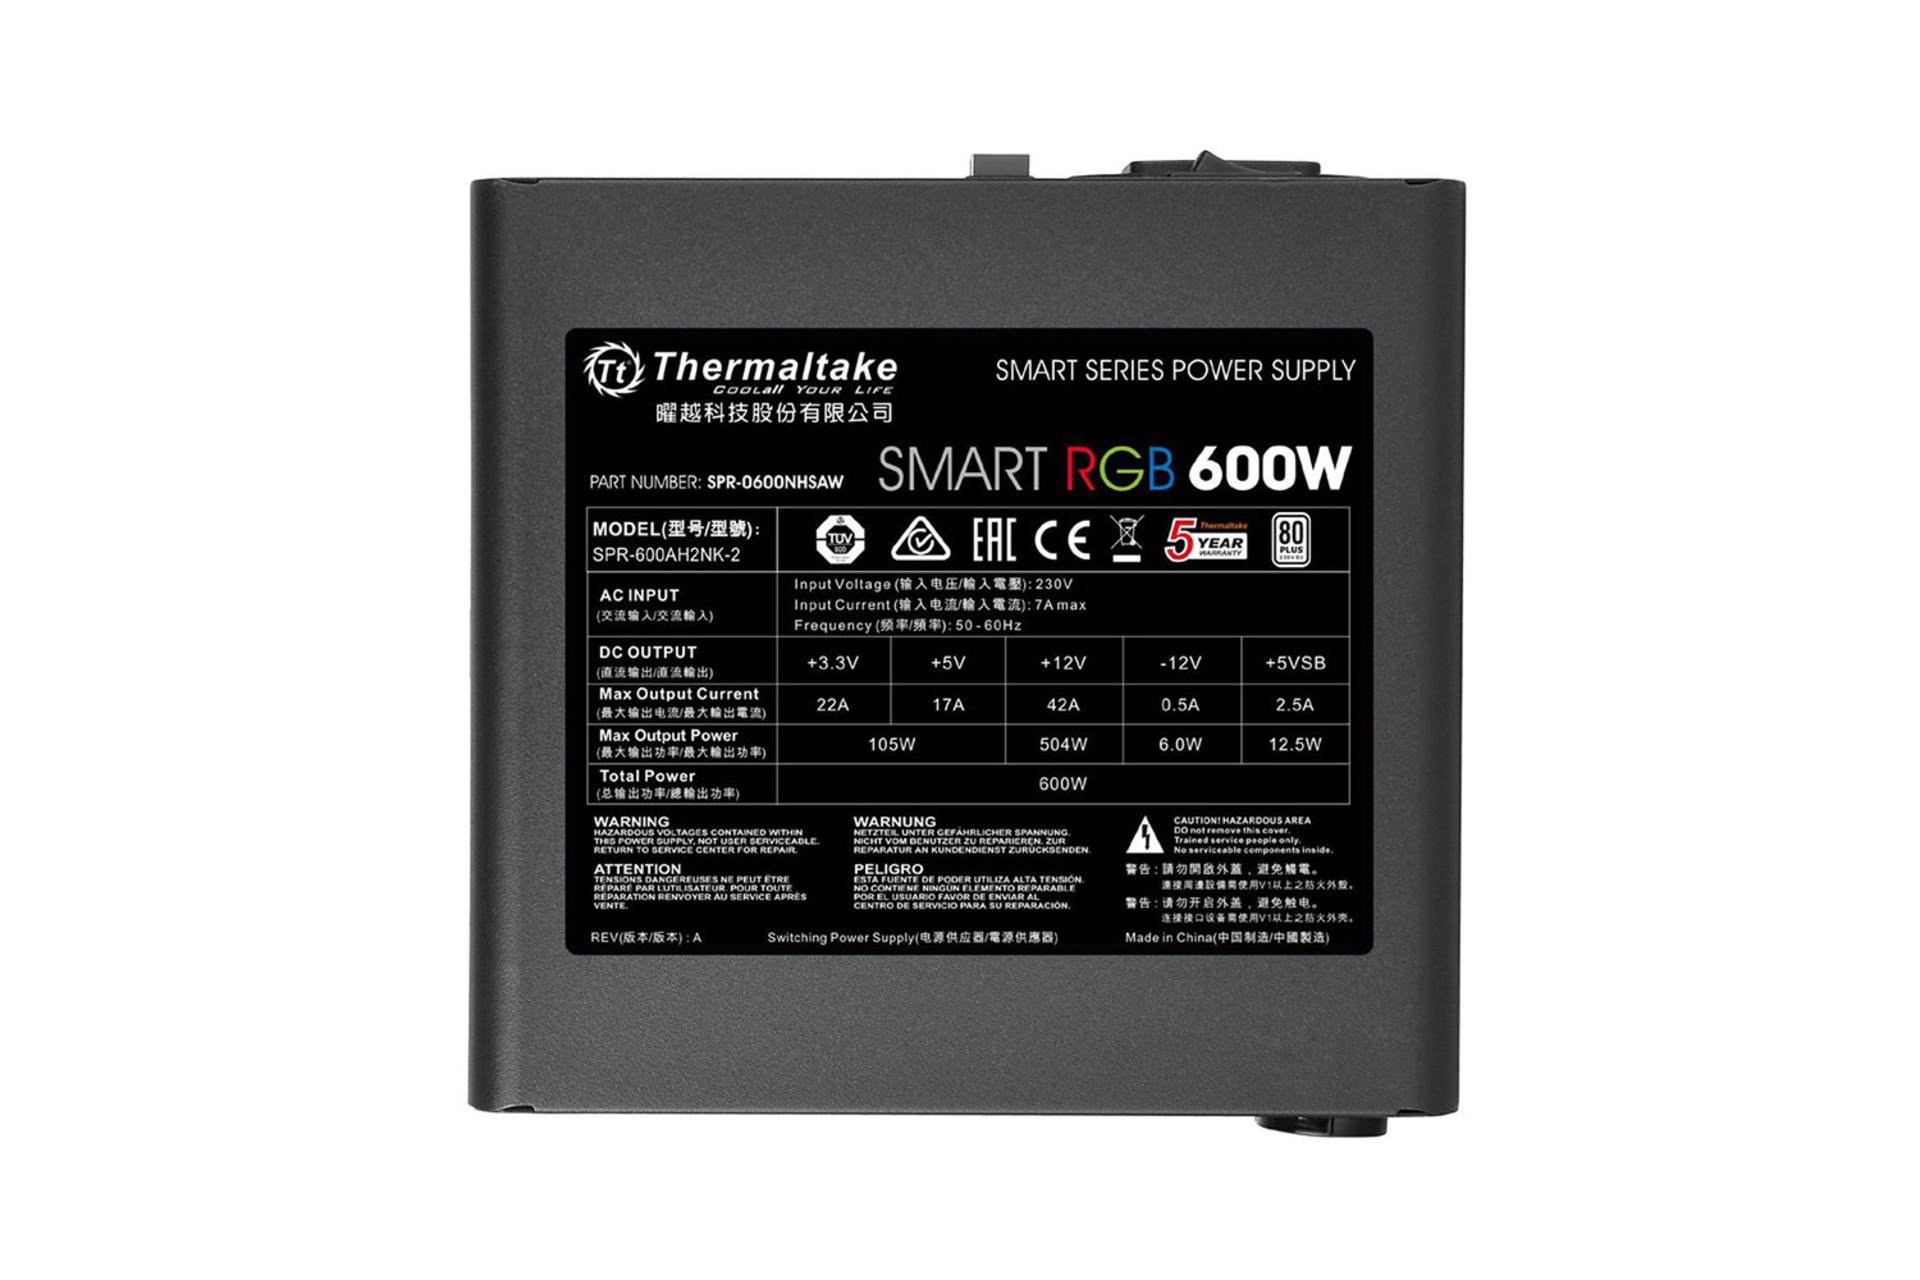 ولتاژ و آمپر پاور کامپیوتر ترمالتیک Thermaltake Smart RGB 600W با توان 600 وات